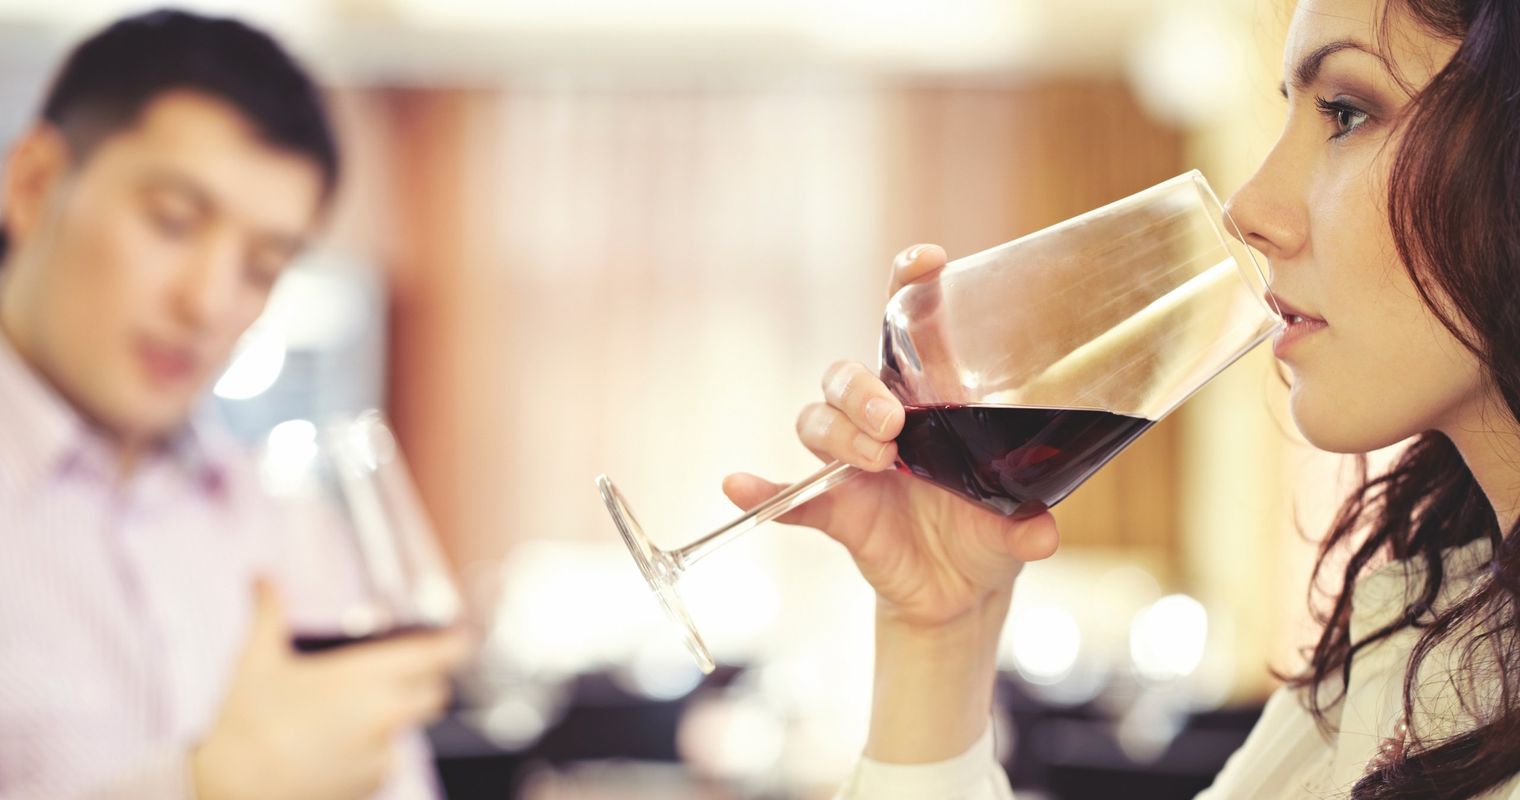 Kork, Kopfschmerzen und Weinstein: sechs Irrtümer zu Wein